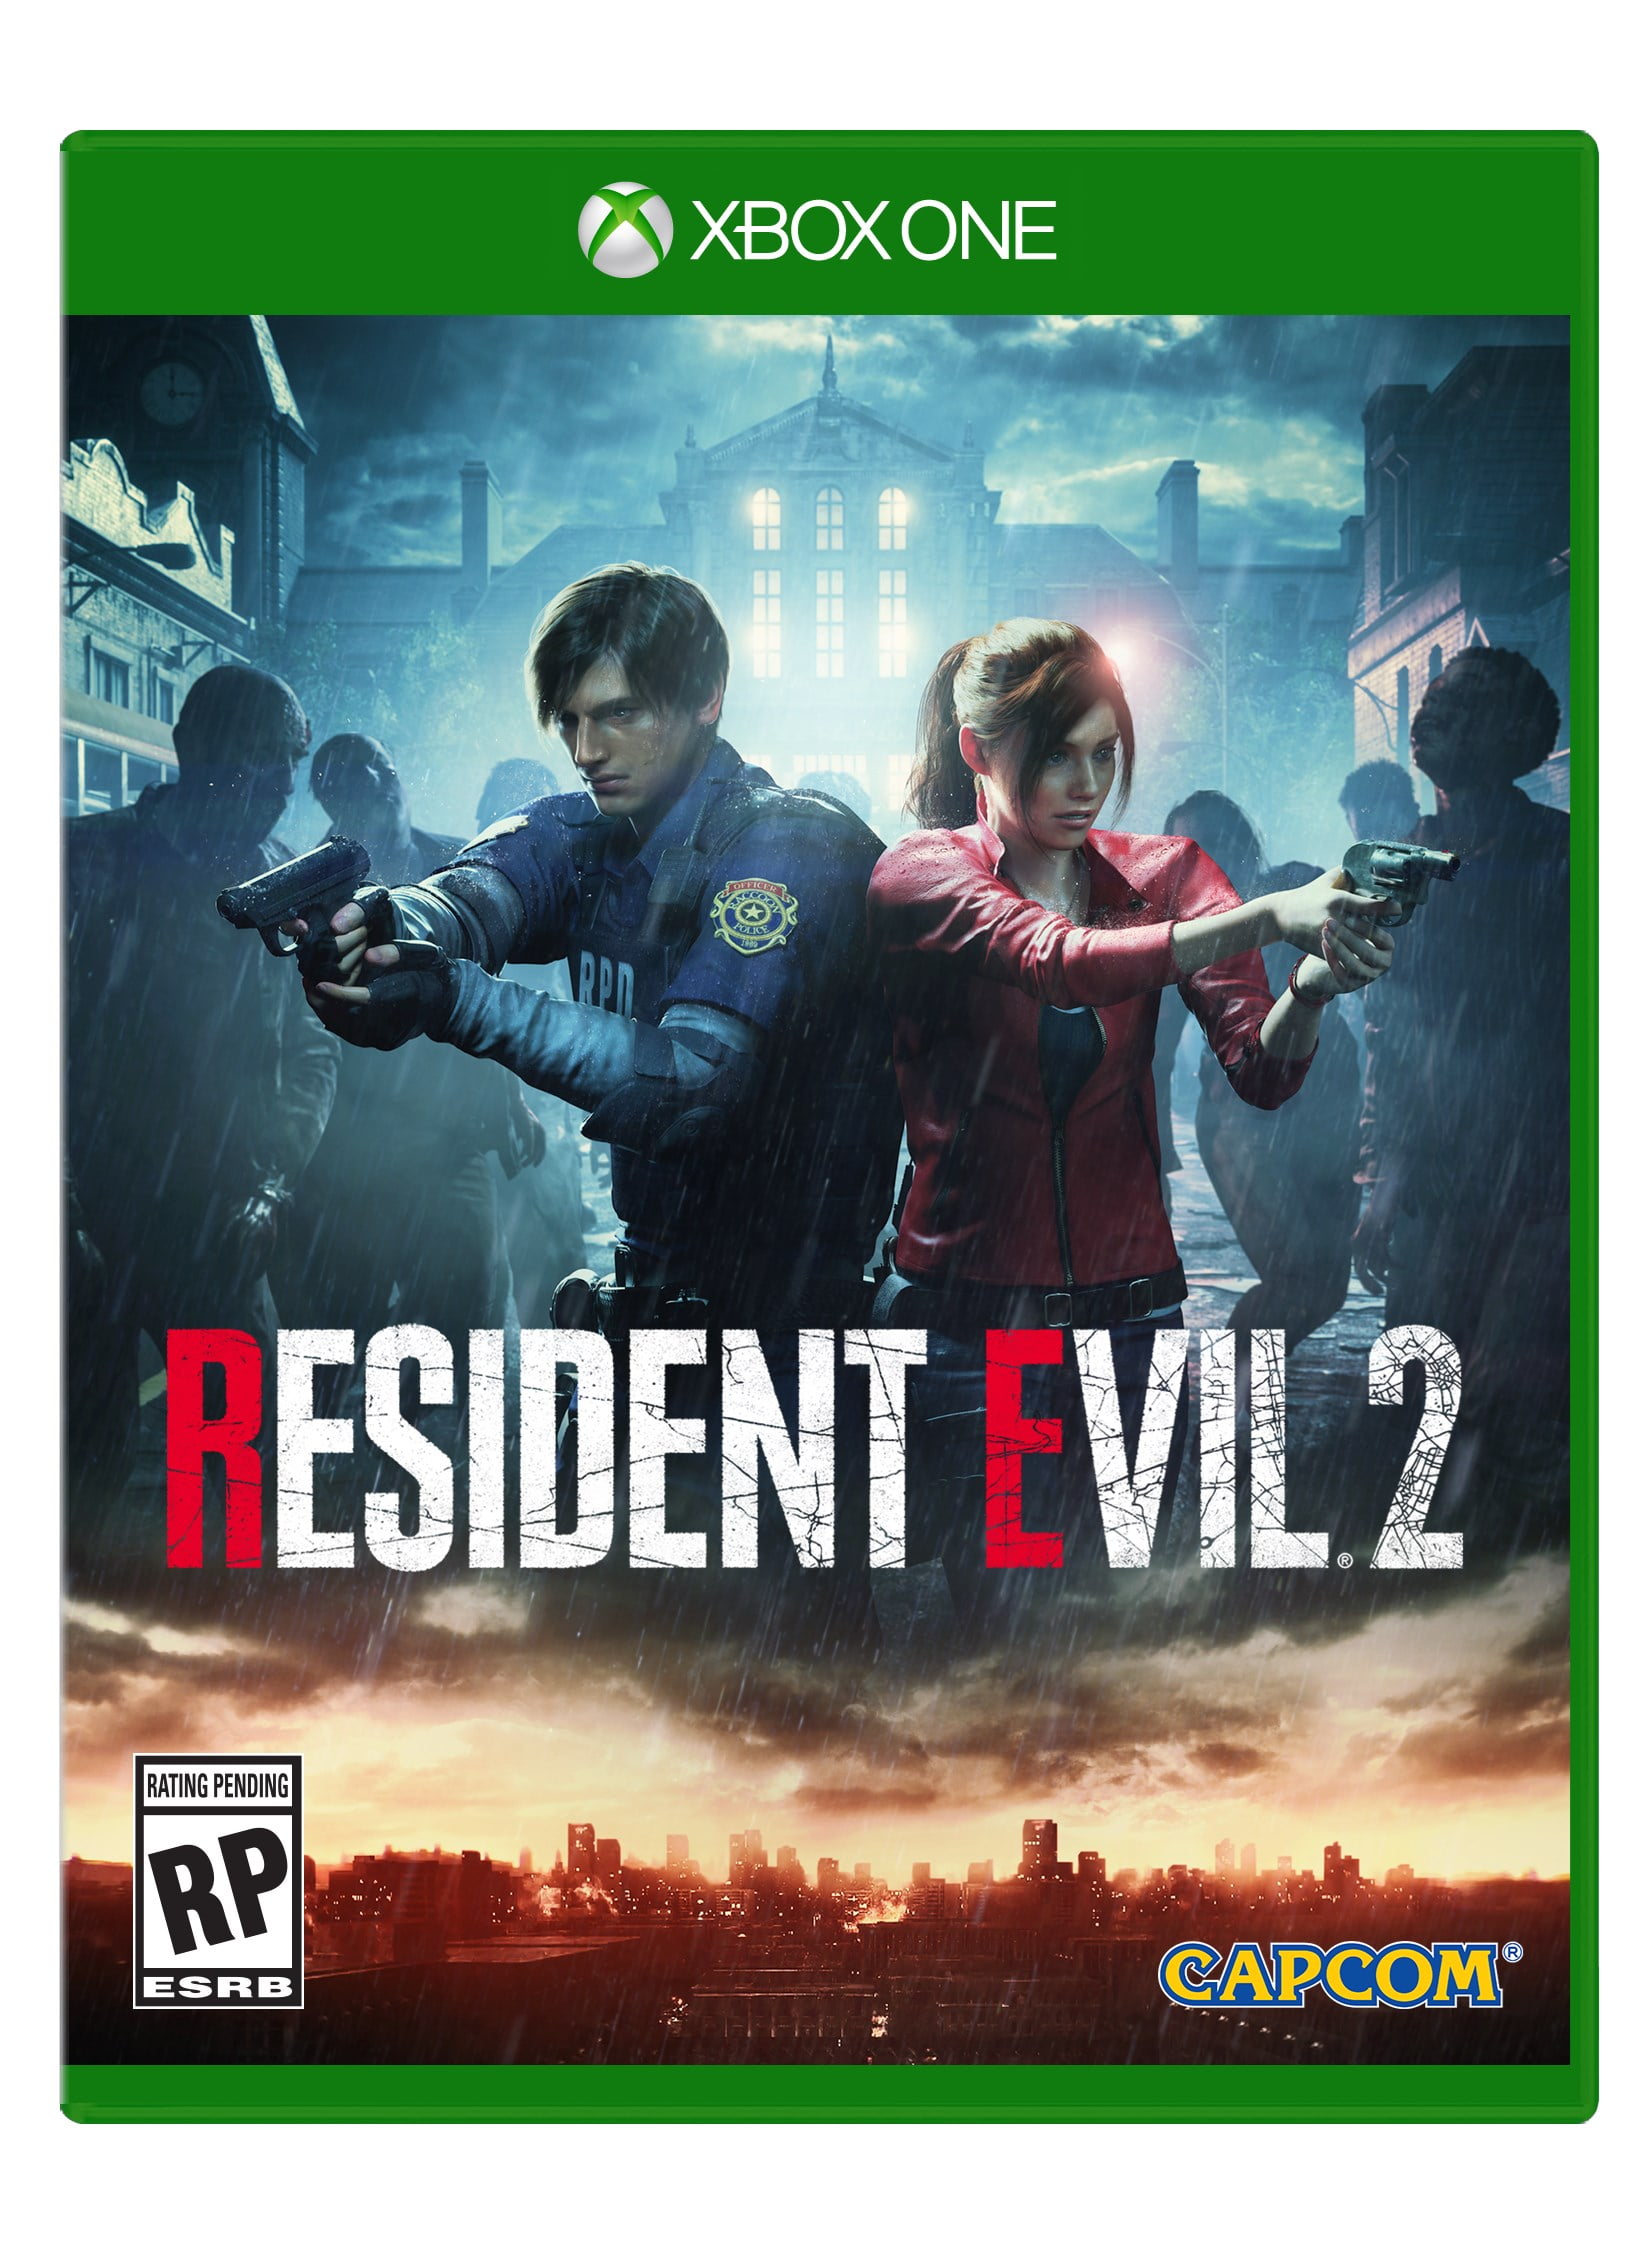 Juventud Gemidos Federal Resident Evil 2, Capcom, Xbox One, [Physical], 013388550364 - Walmart.com